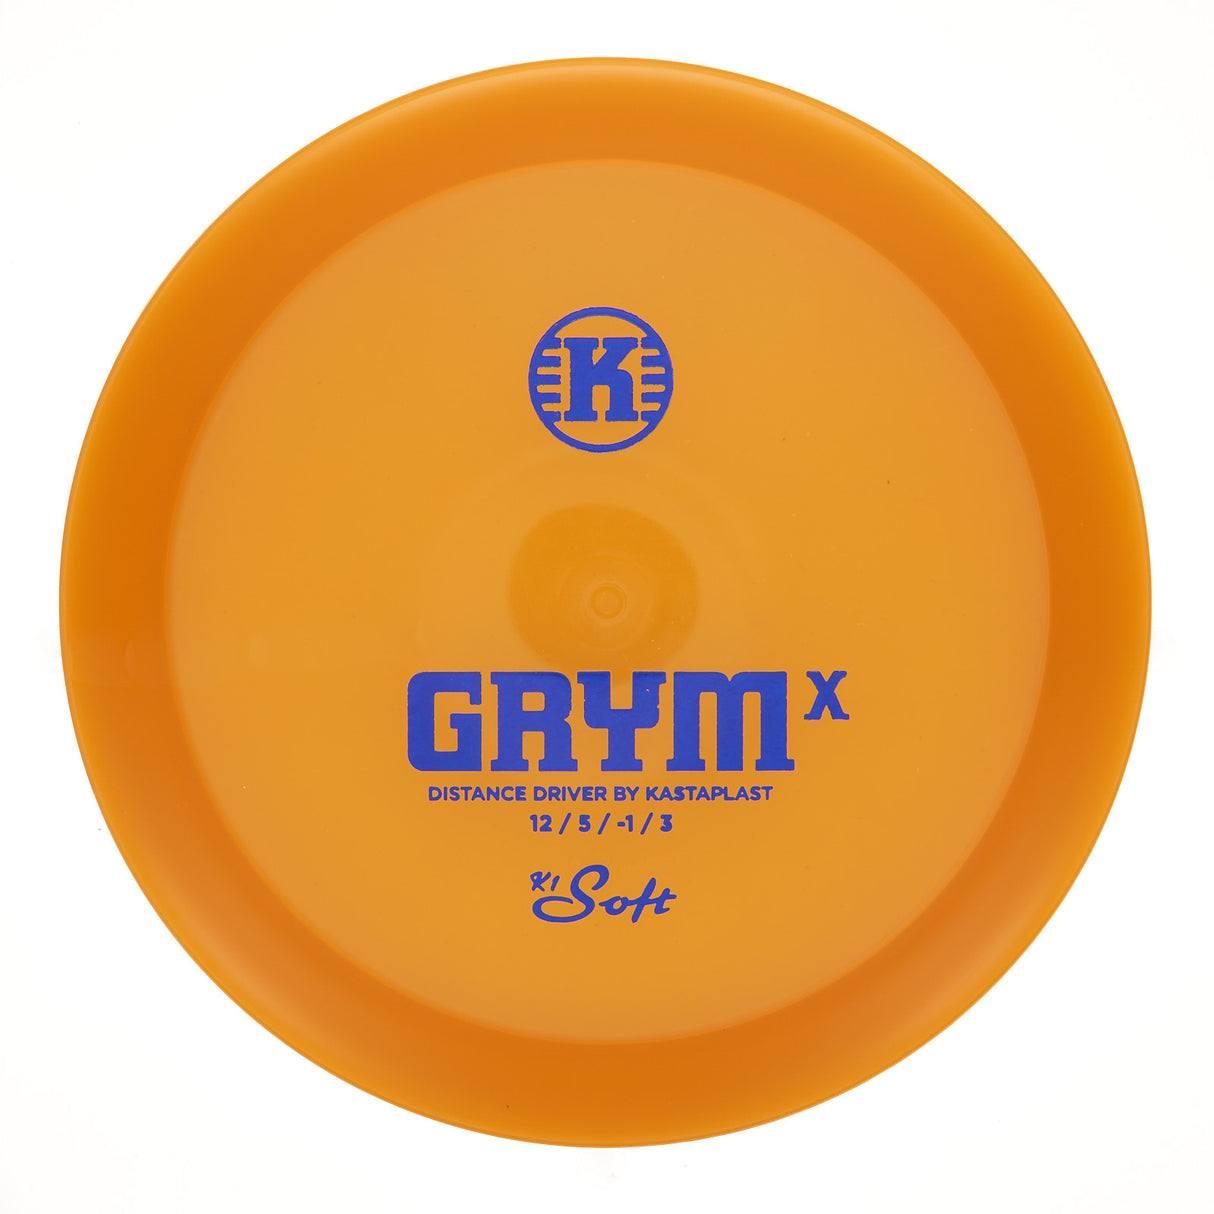 Kastaplast Grym X - K1 Soft 174g | Style 0010